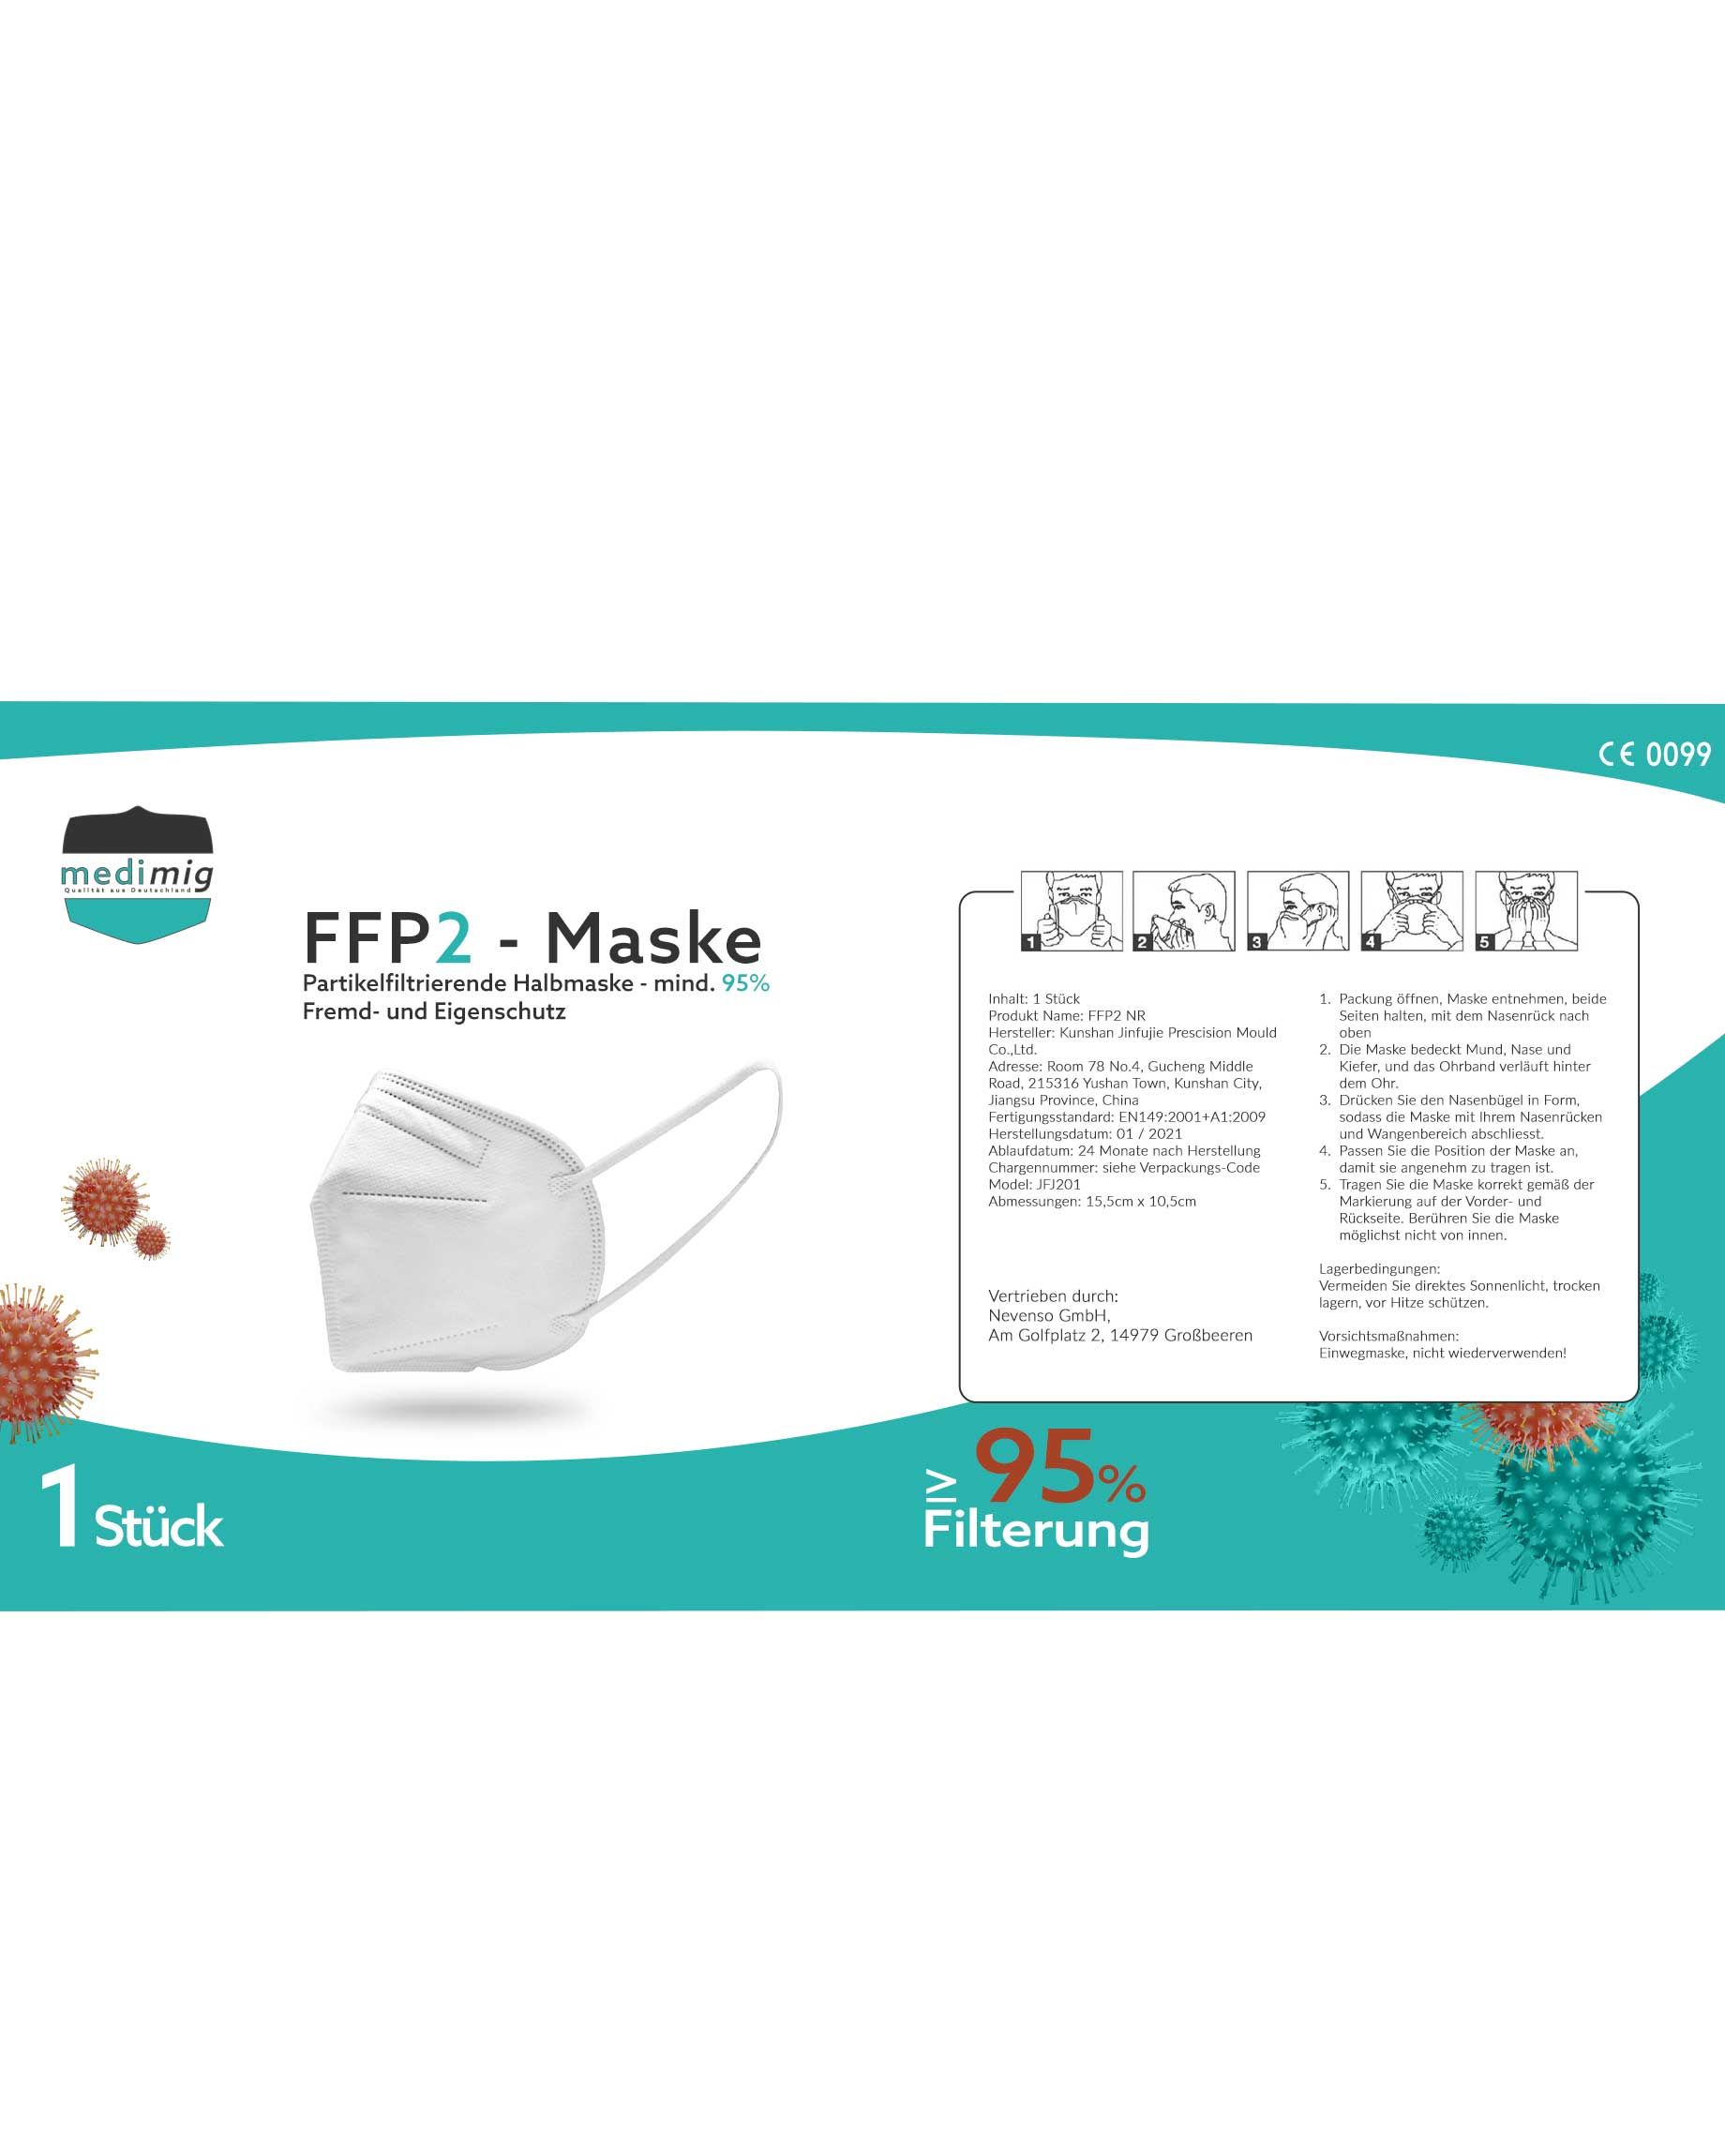 FFP2 Masken Packung klein Layout